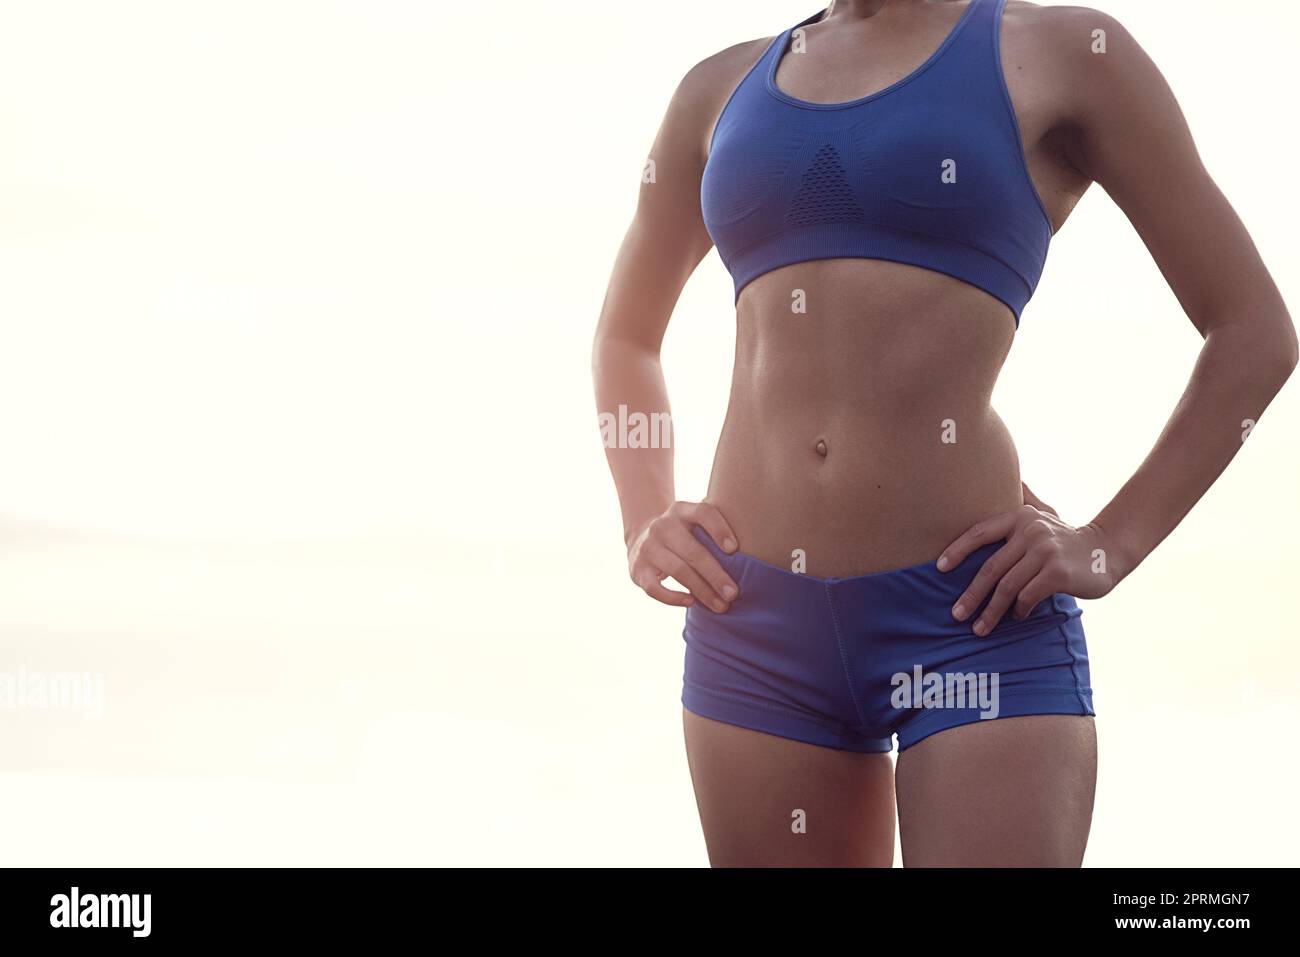 Ihr Körper ist jedes Workout wert. Eine fraute Frau in Sportbekleidung zeigt stolz ihren straffen Körper. Stockfoto